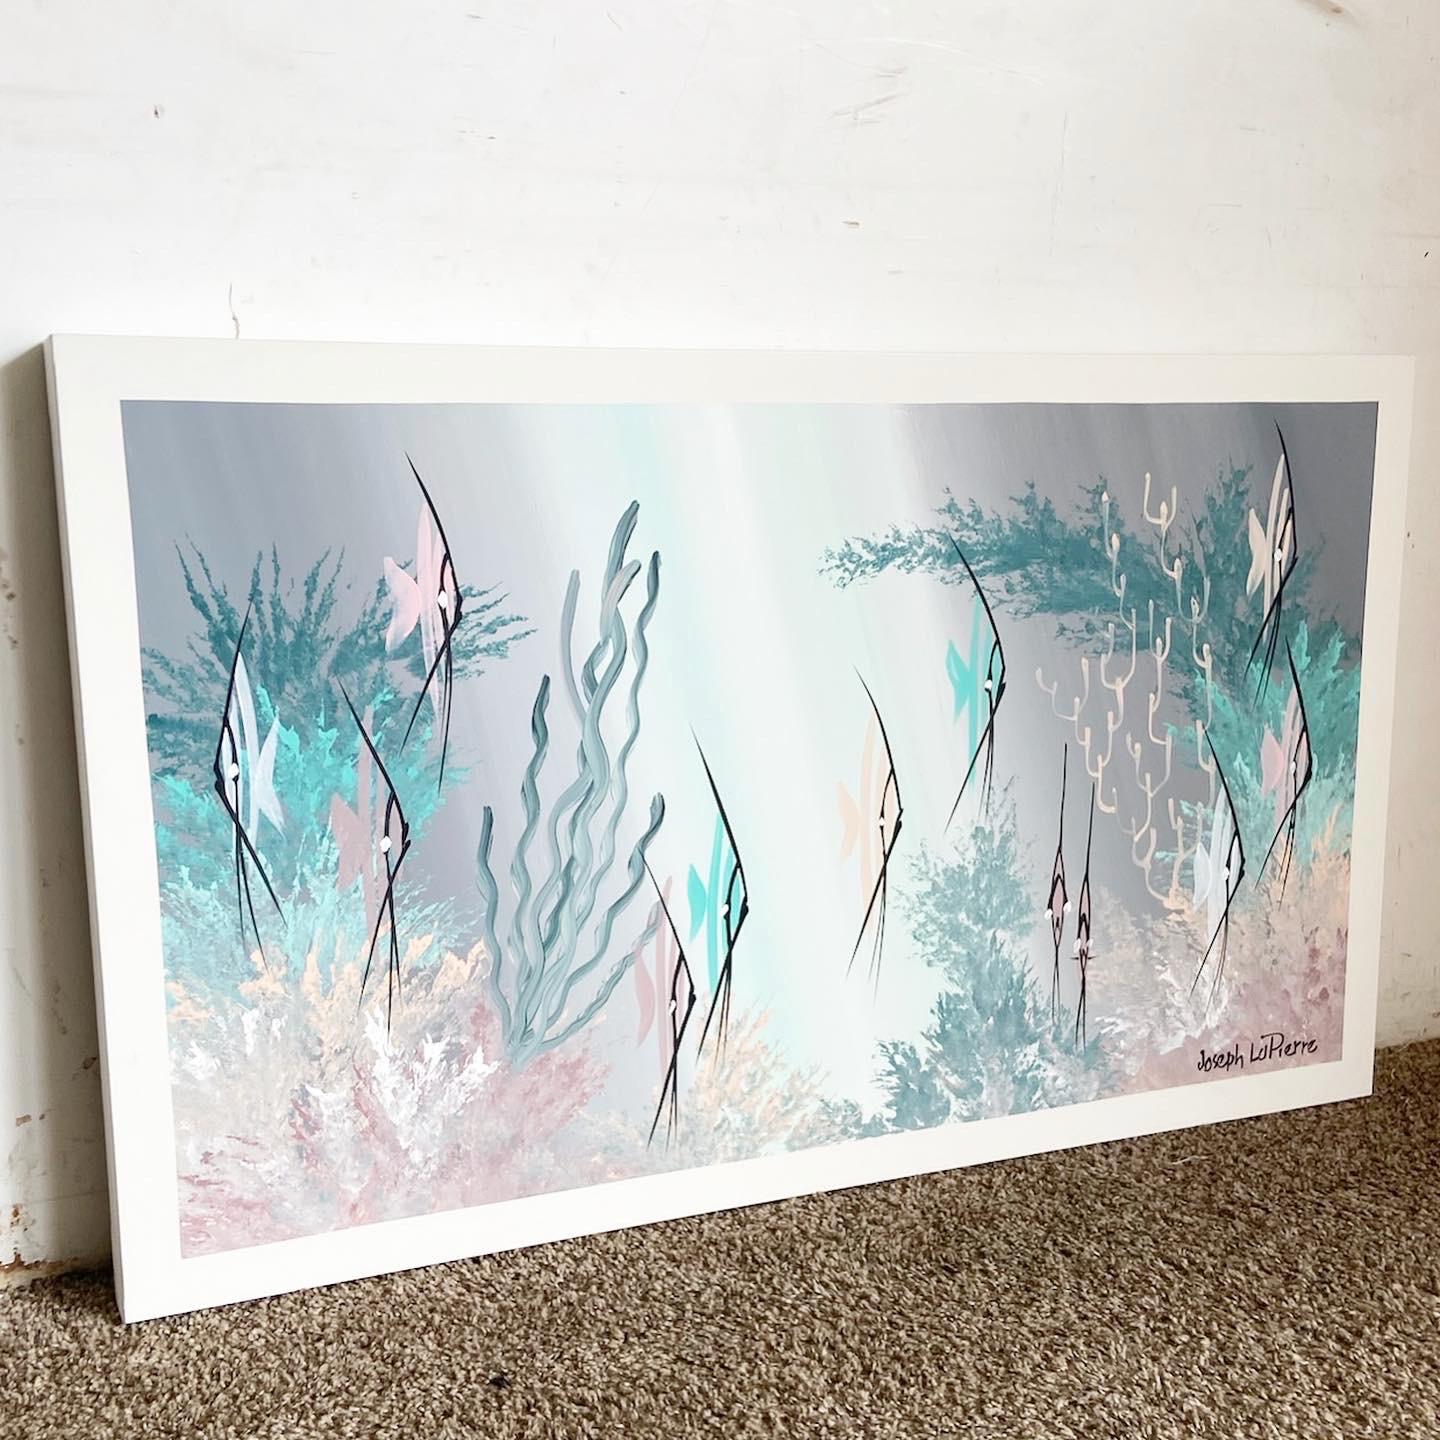 Plongez dans les profondeurs avec cette peinture abstraite postmoderne de poisson. Signée par l'artiste, elle capture le monde sous-marin vibrant, avec des poissons abstraits naviguant sur un récif coloré. Mélange de traits dynamiques et de motifs